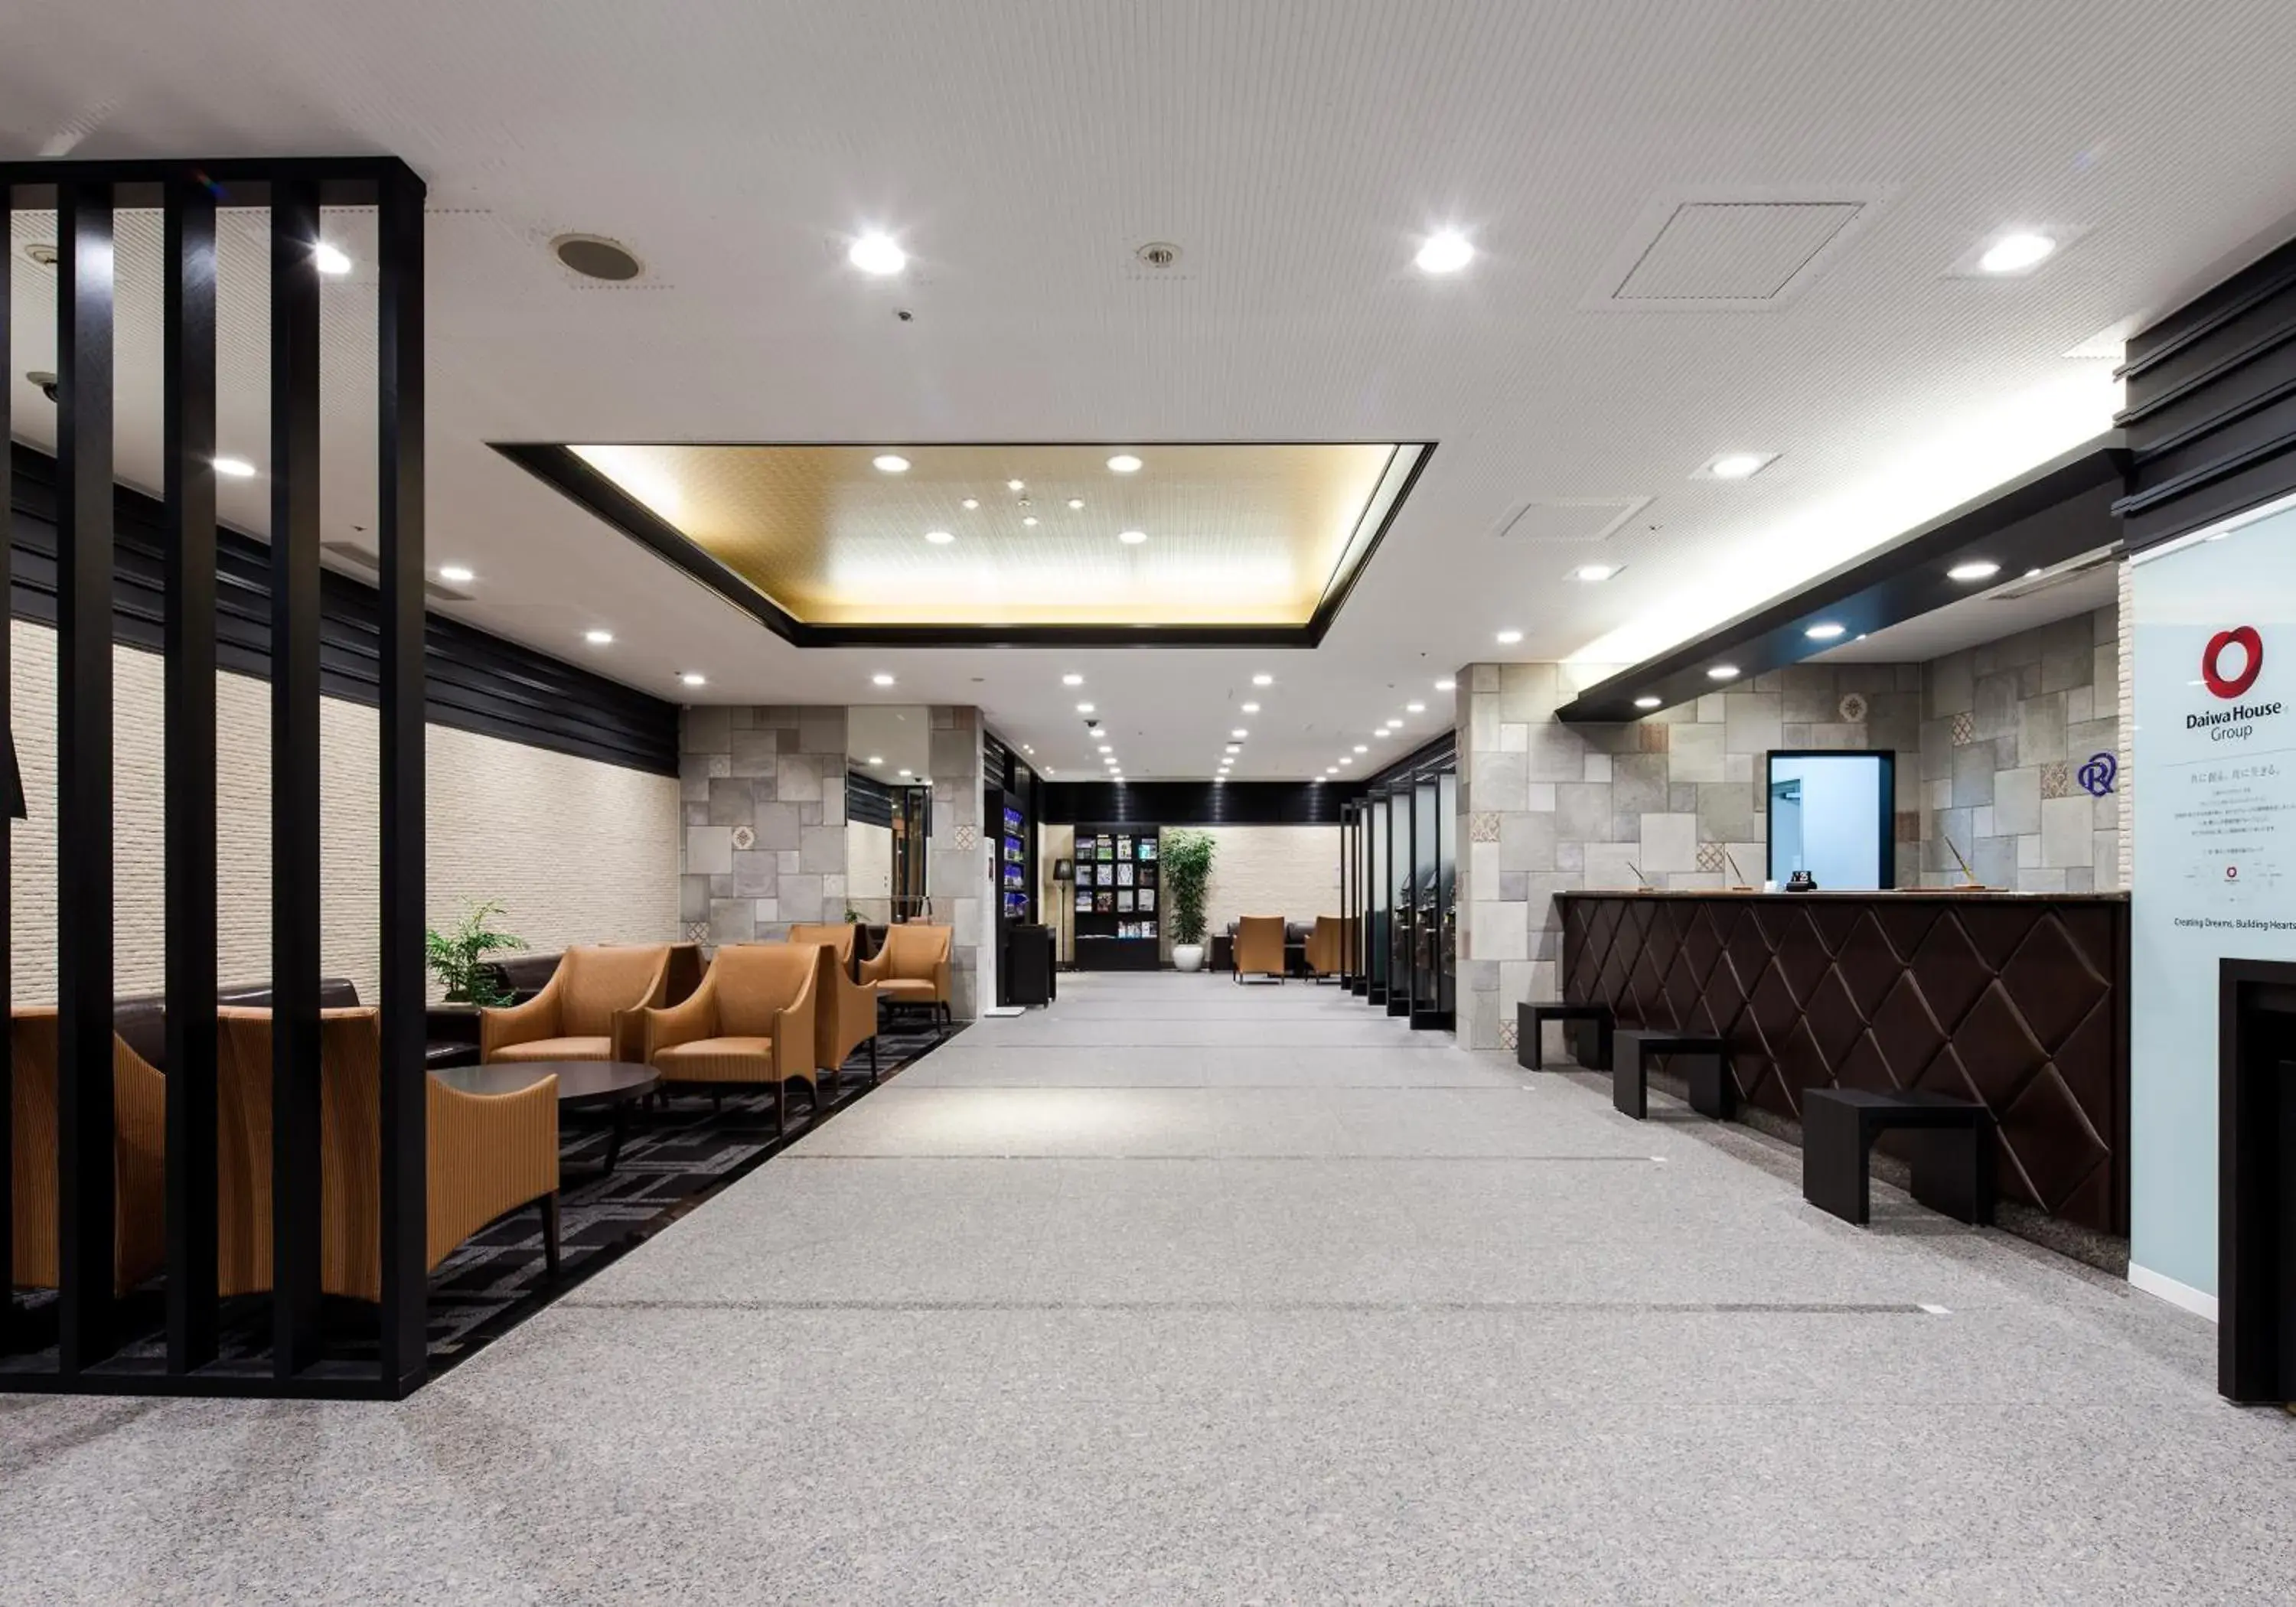 Lobby or reception, Lobby/Reception in Daiwa Roynet Hotel Kobe-Sannomiya